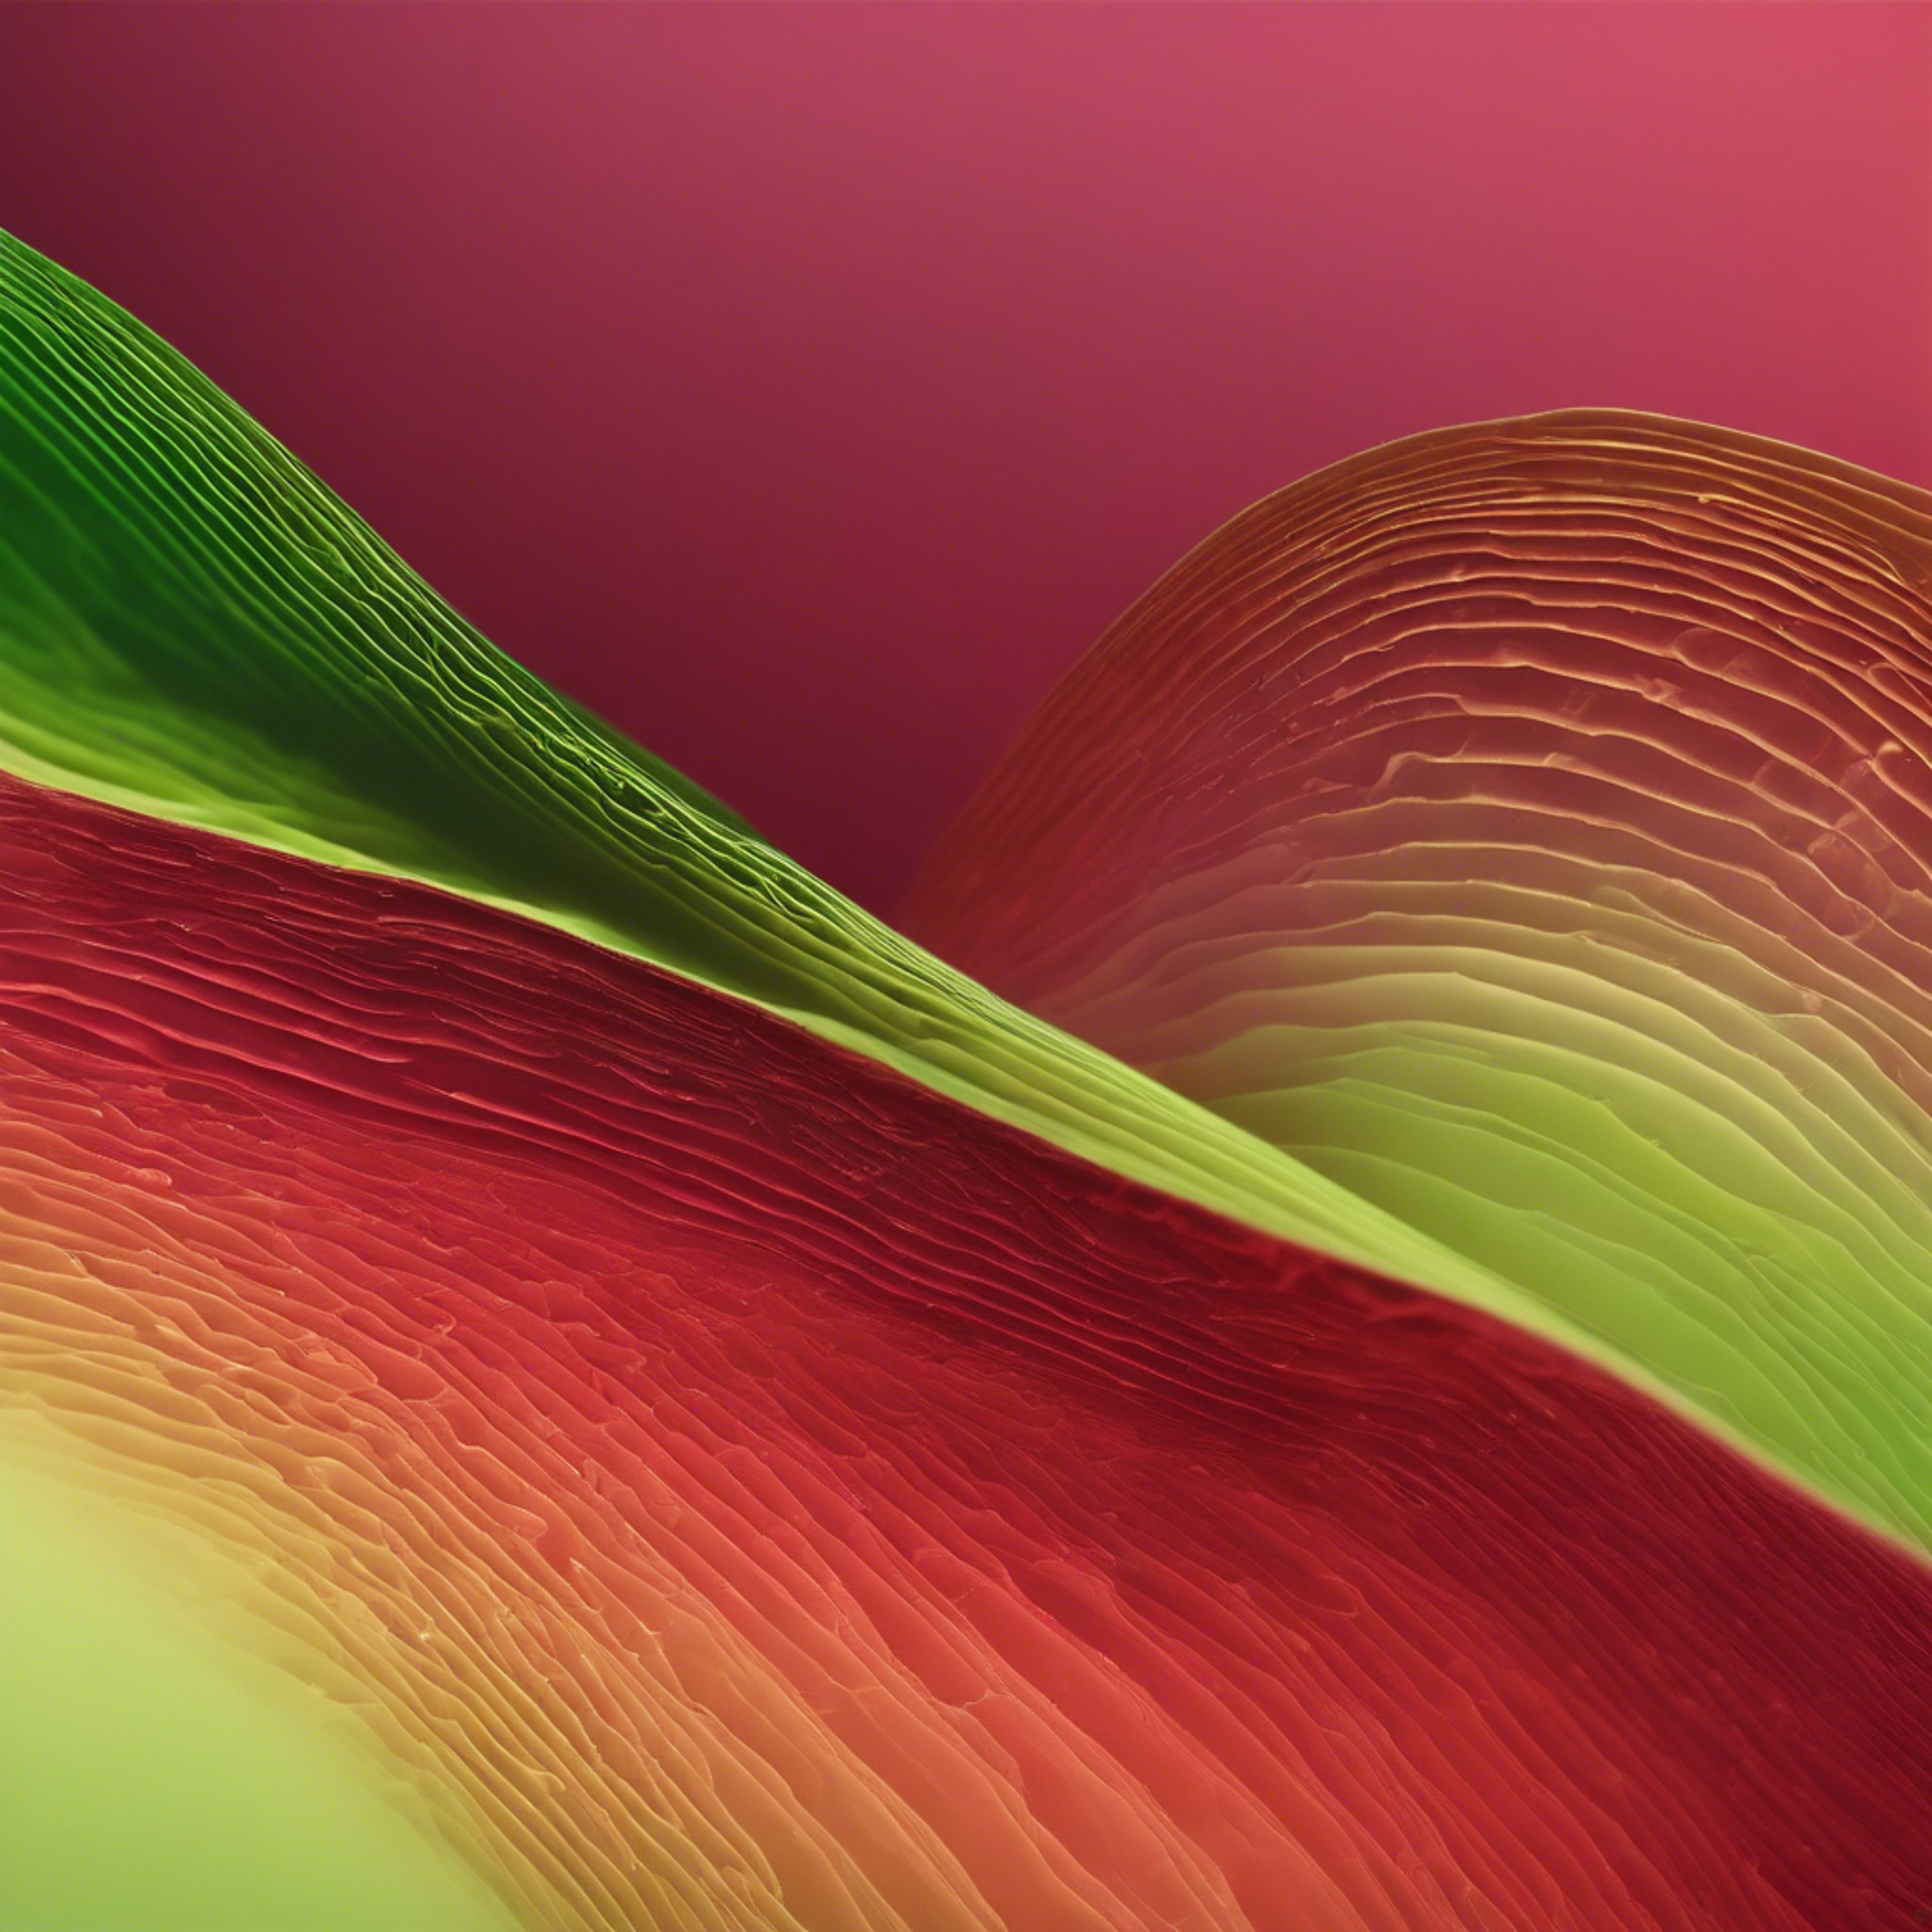 Design portraying a gradient flow from ruby red to lime green Divar kağızı[3ca7b80b590c439f91ba]